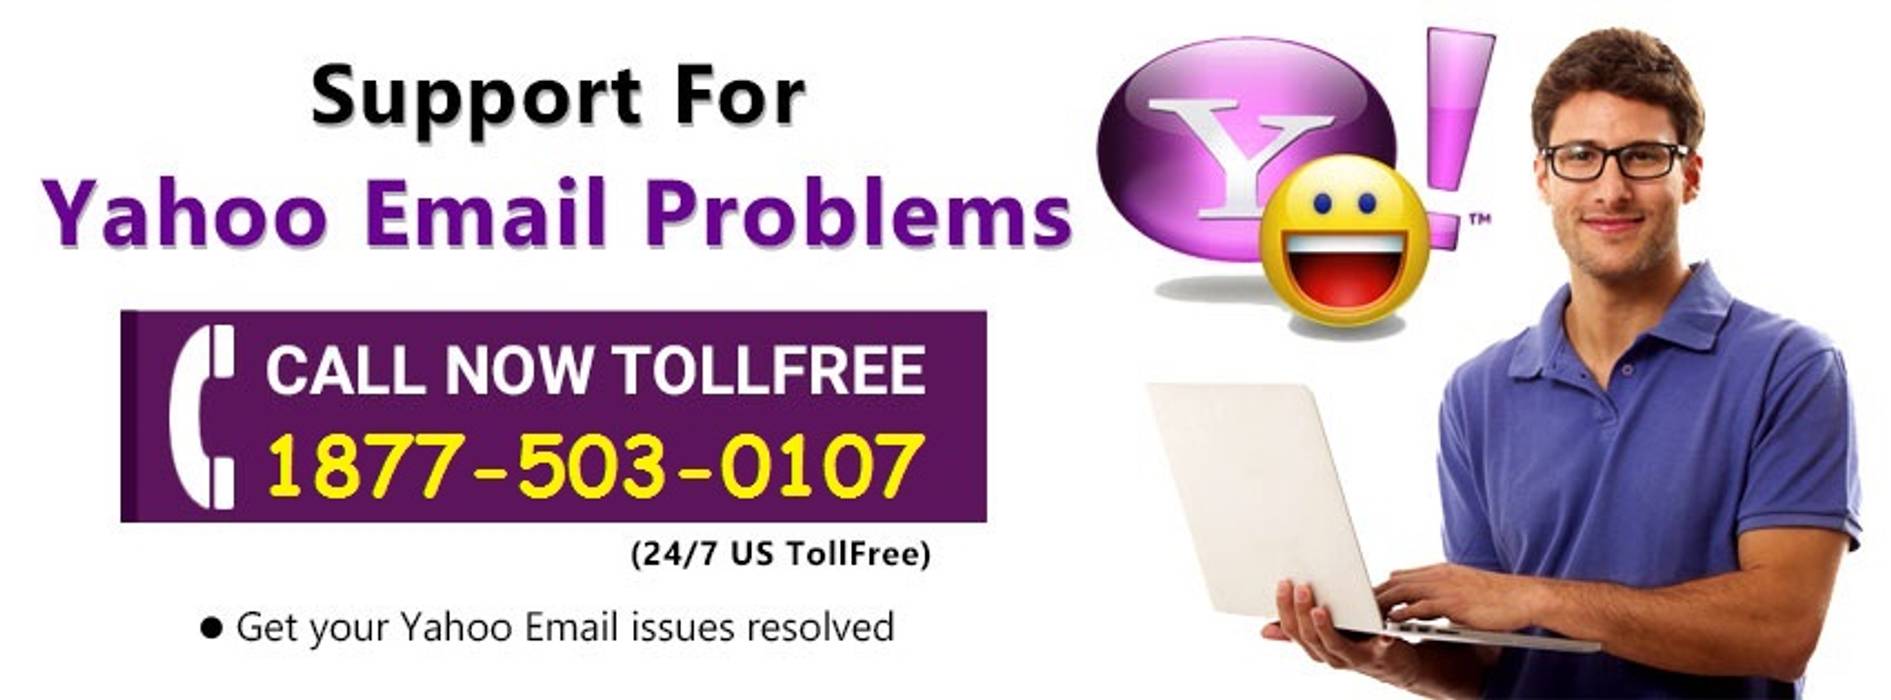 Contact Yahoo Customer Support Phone Number 1877-503-0107, Yahoo Mail Support Number 1877-503-0107 Yahoo Mail Support Number 1877-503-0107 Lantai Kayu Buatan Transparent